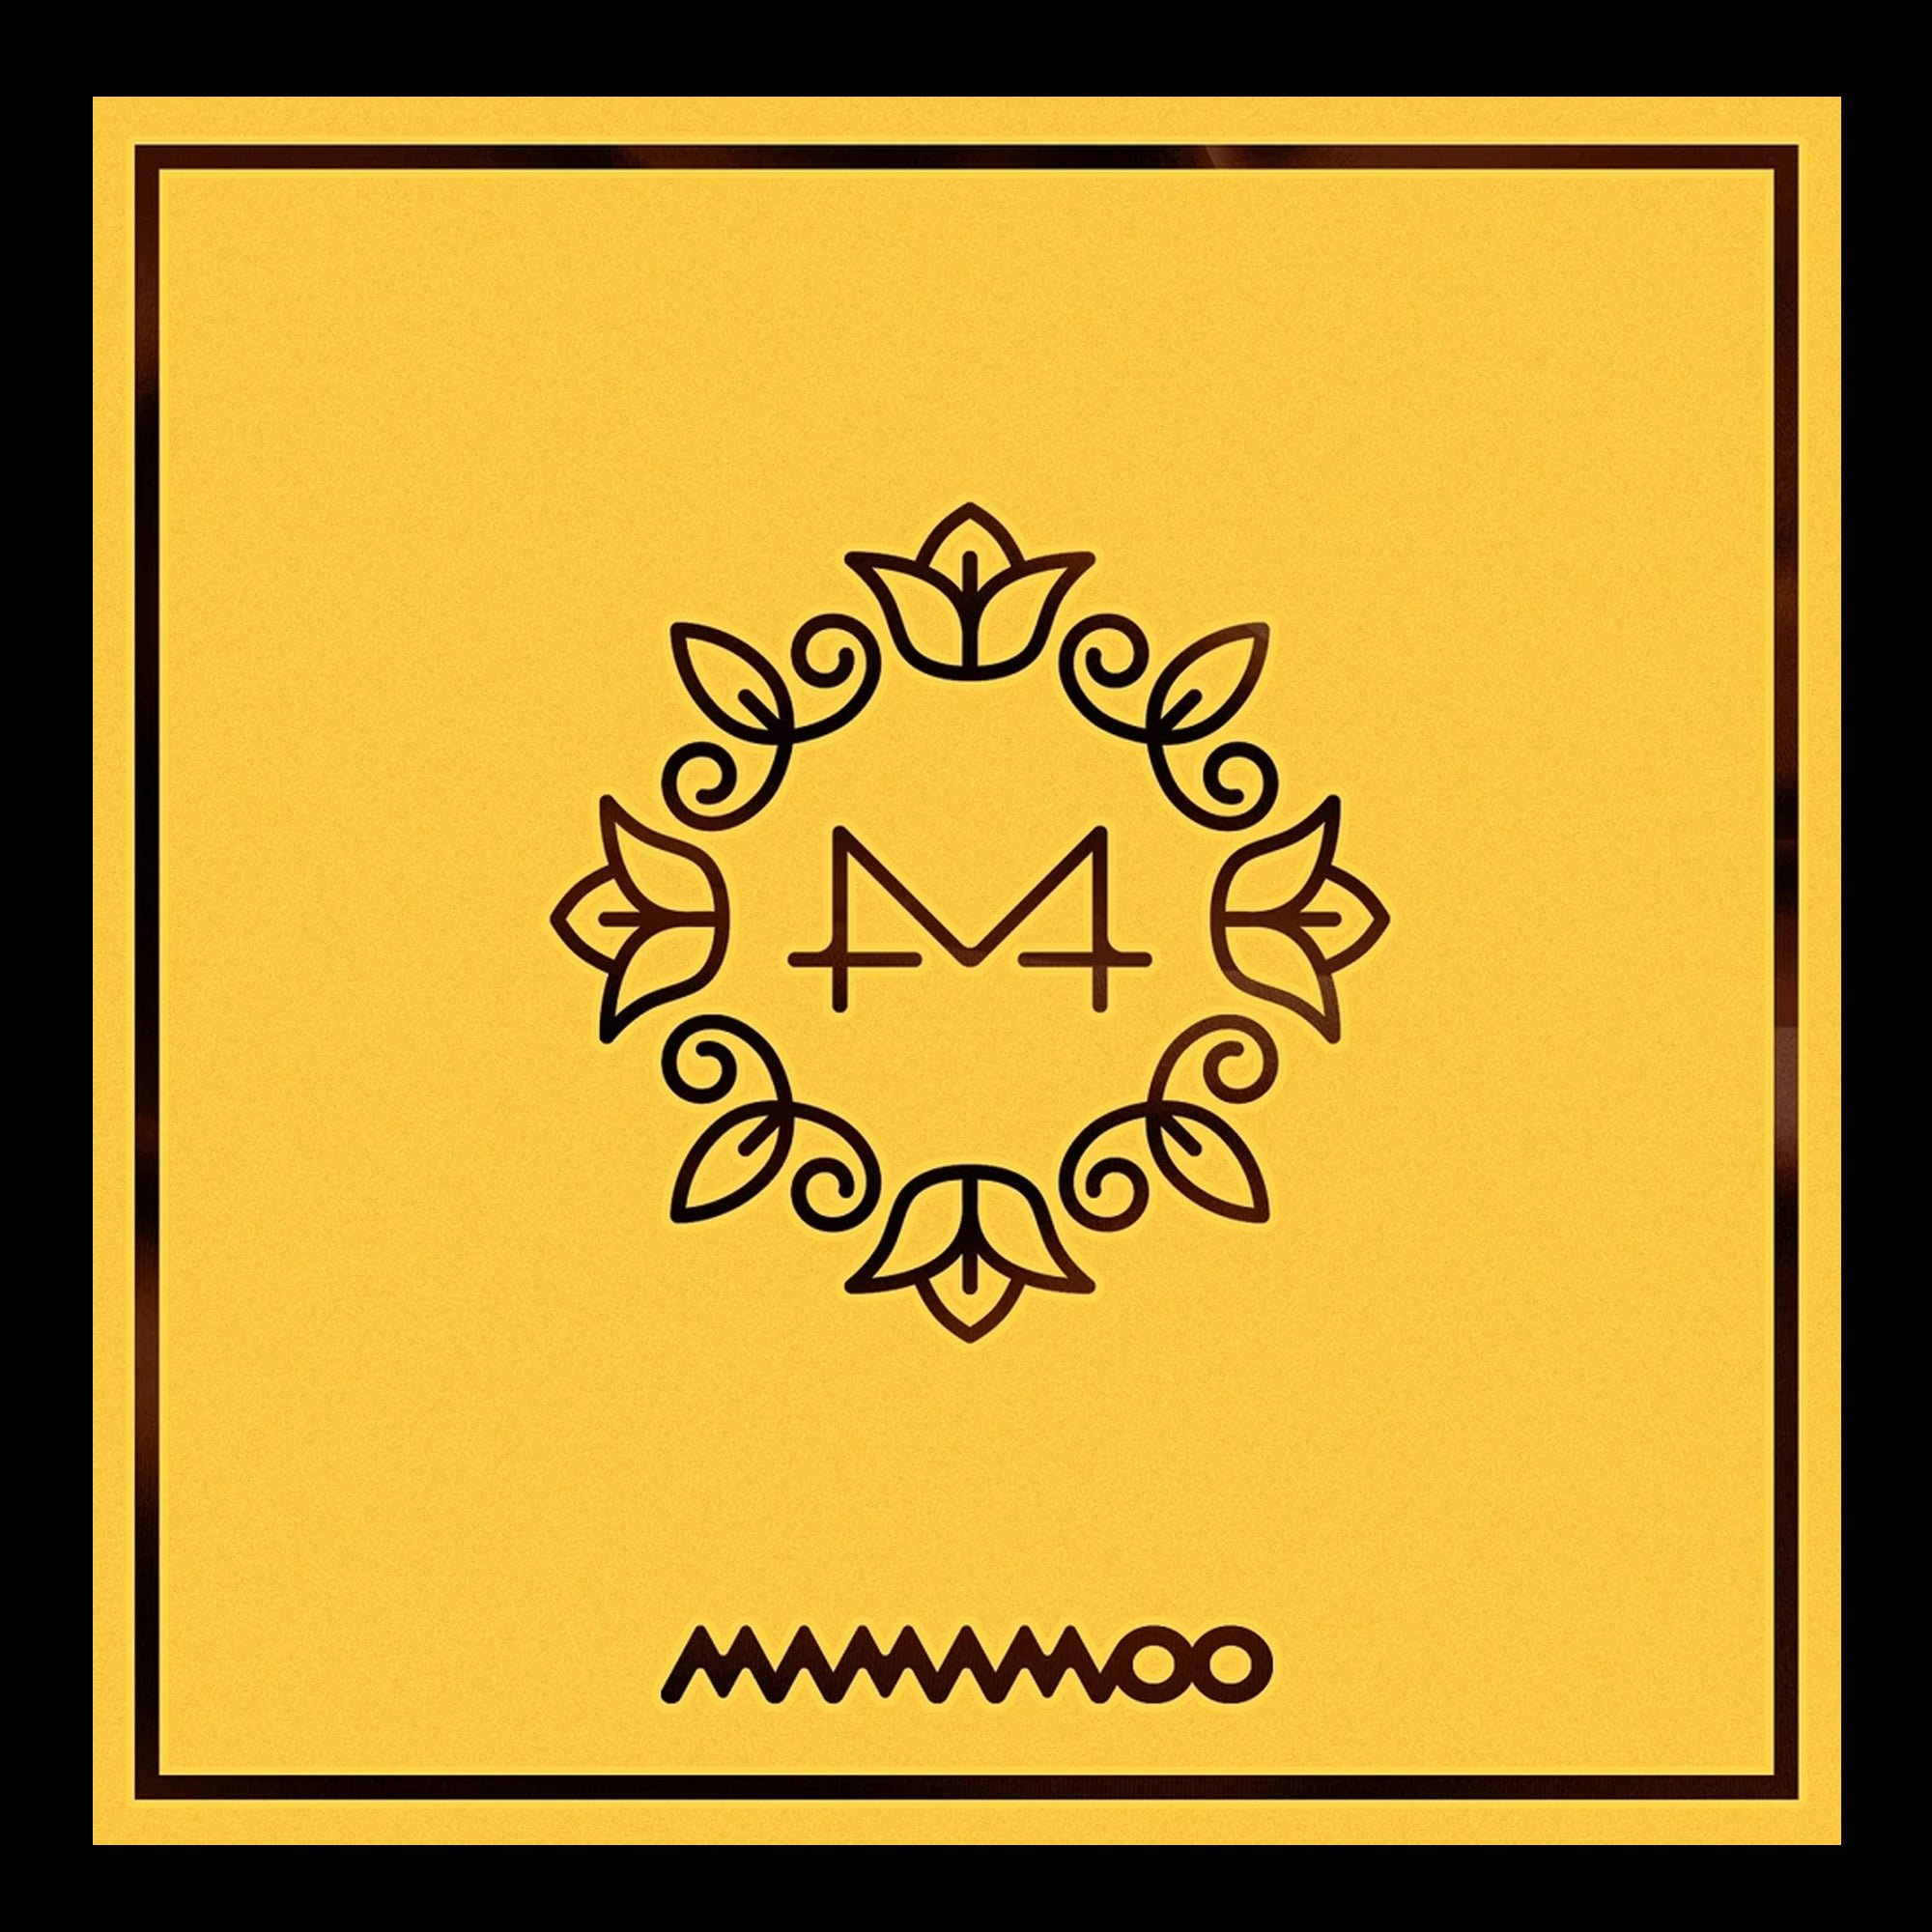 Mamamoo - Yellow Flower